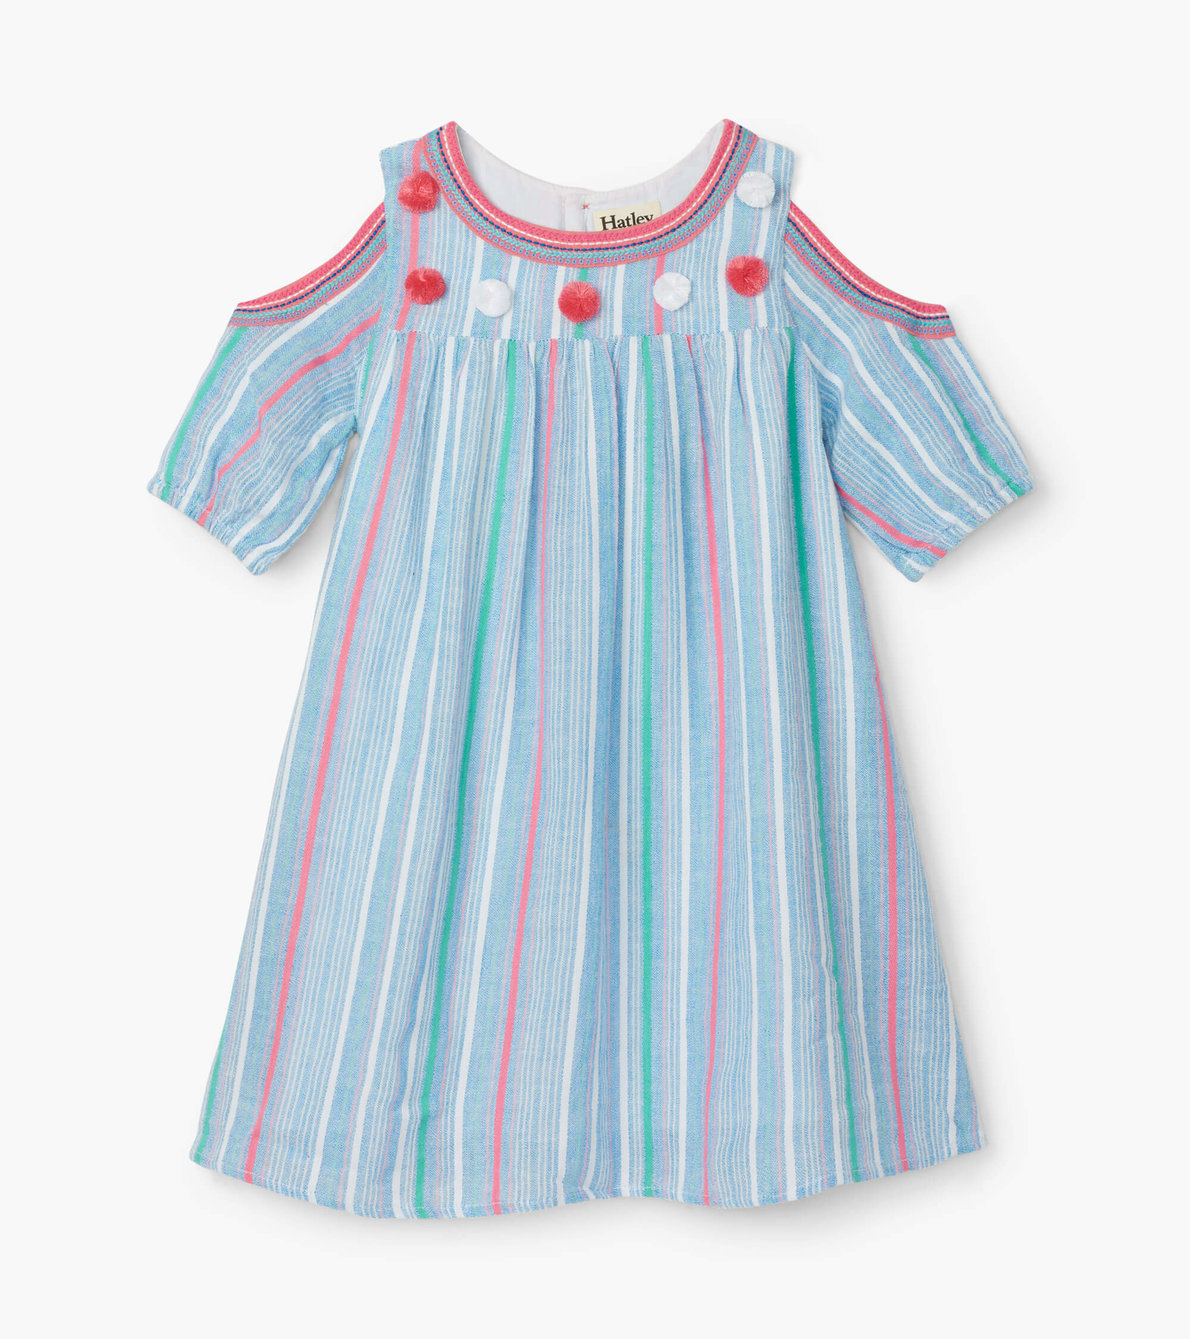 View larger image of Summer Stripe Cold Shoulder Dress